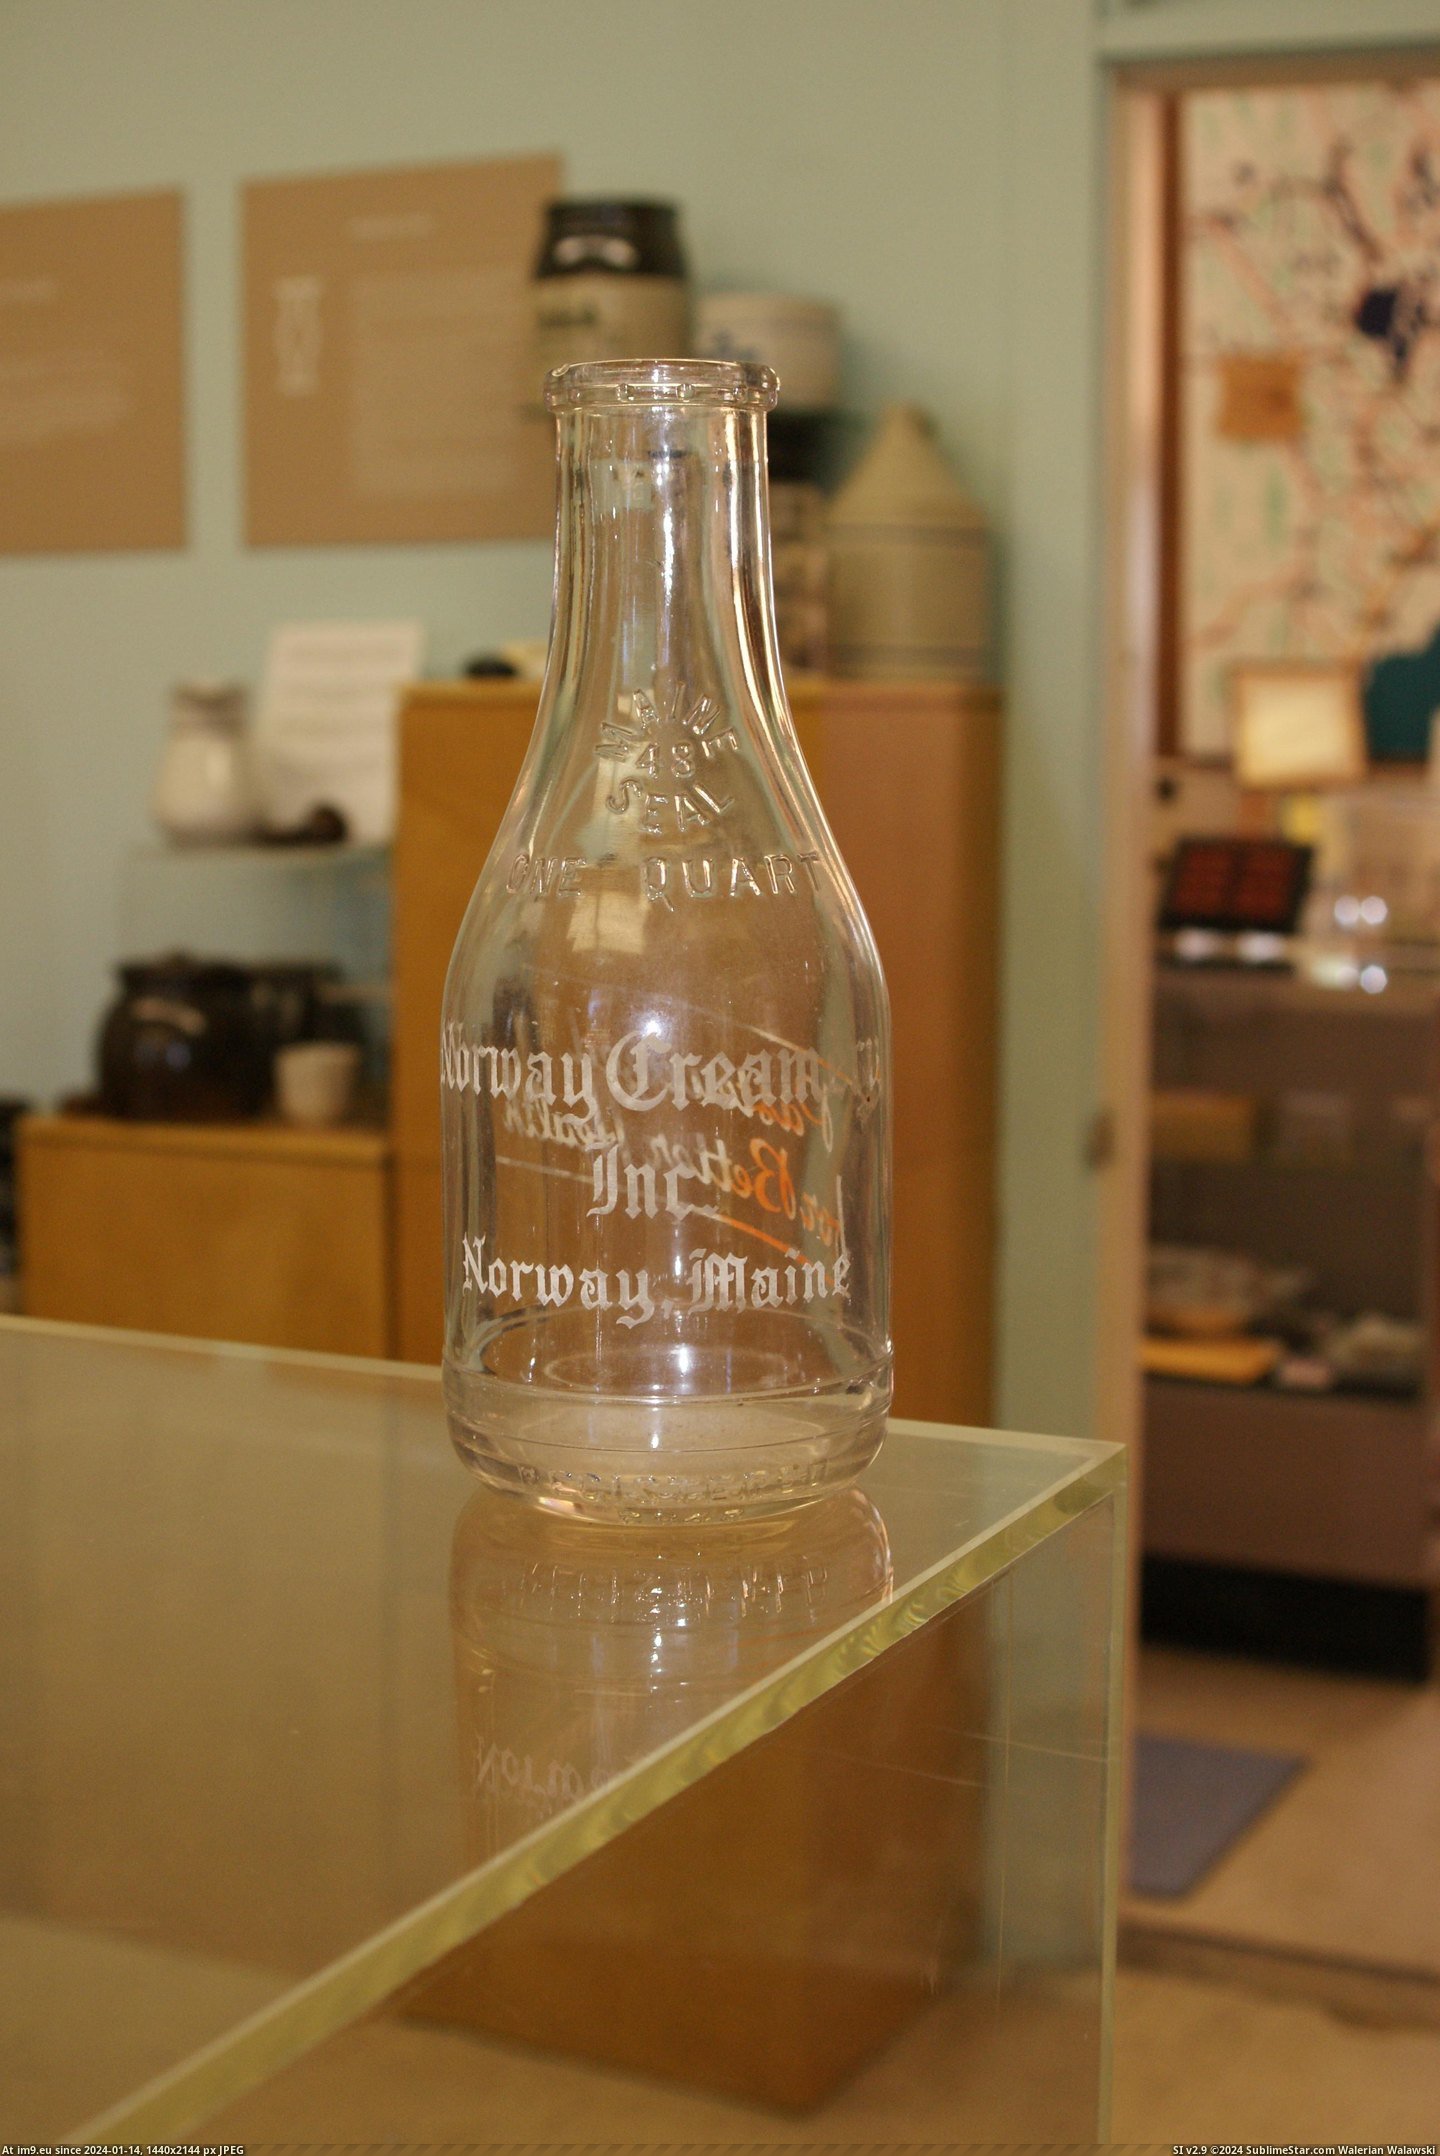 #Museum #Maine #Naples #Bottle MAINE BOTTLE MUSEUM NAPLES (33) Pic. (Bild von album MAINE BOTTLE MUSEUM))